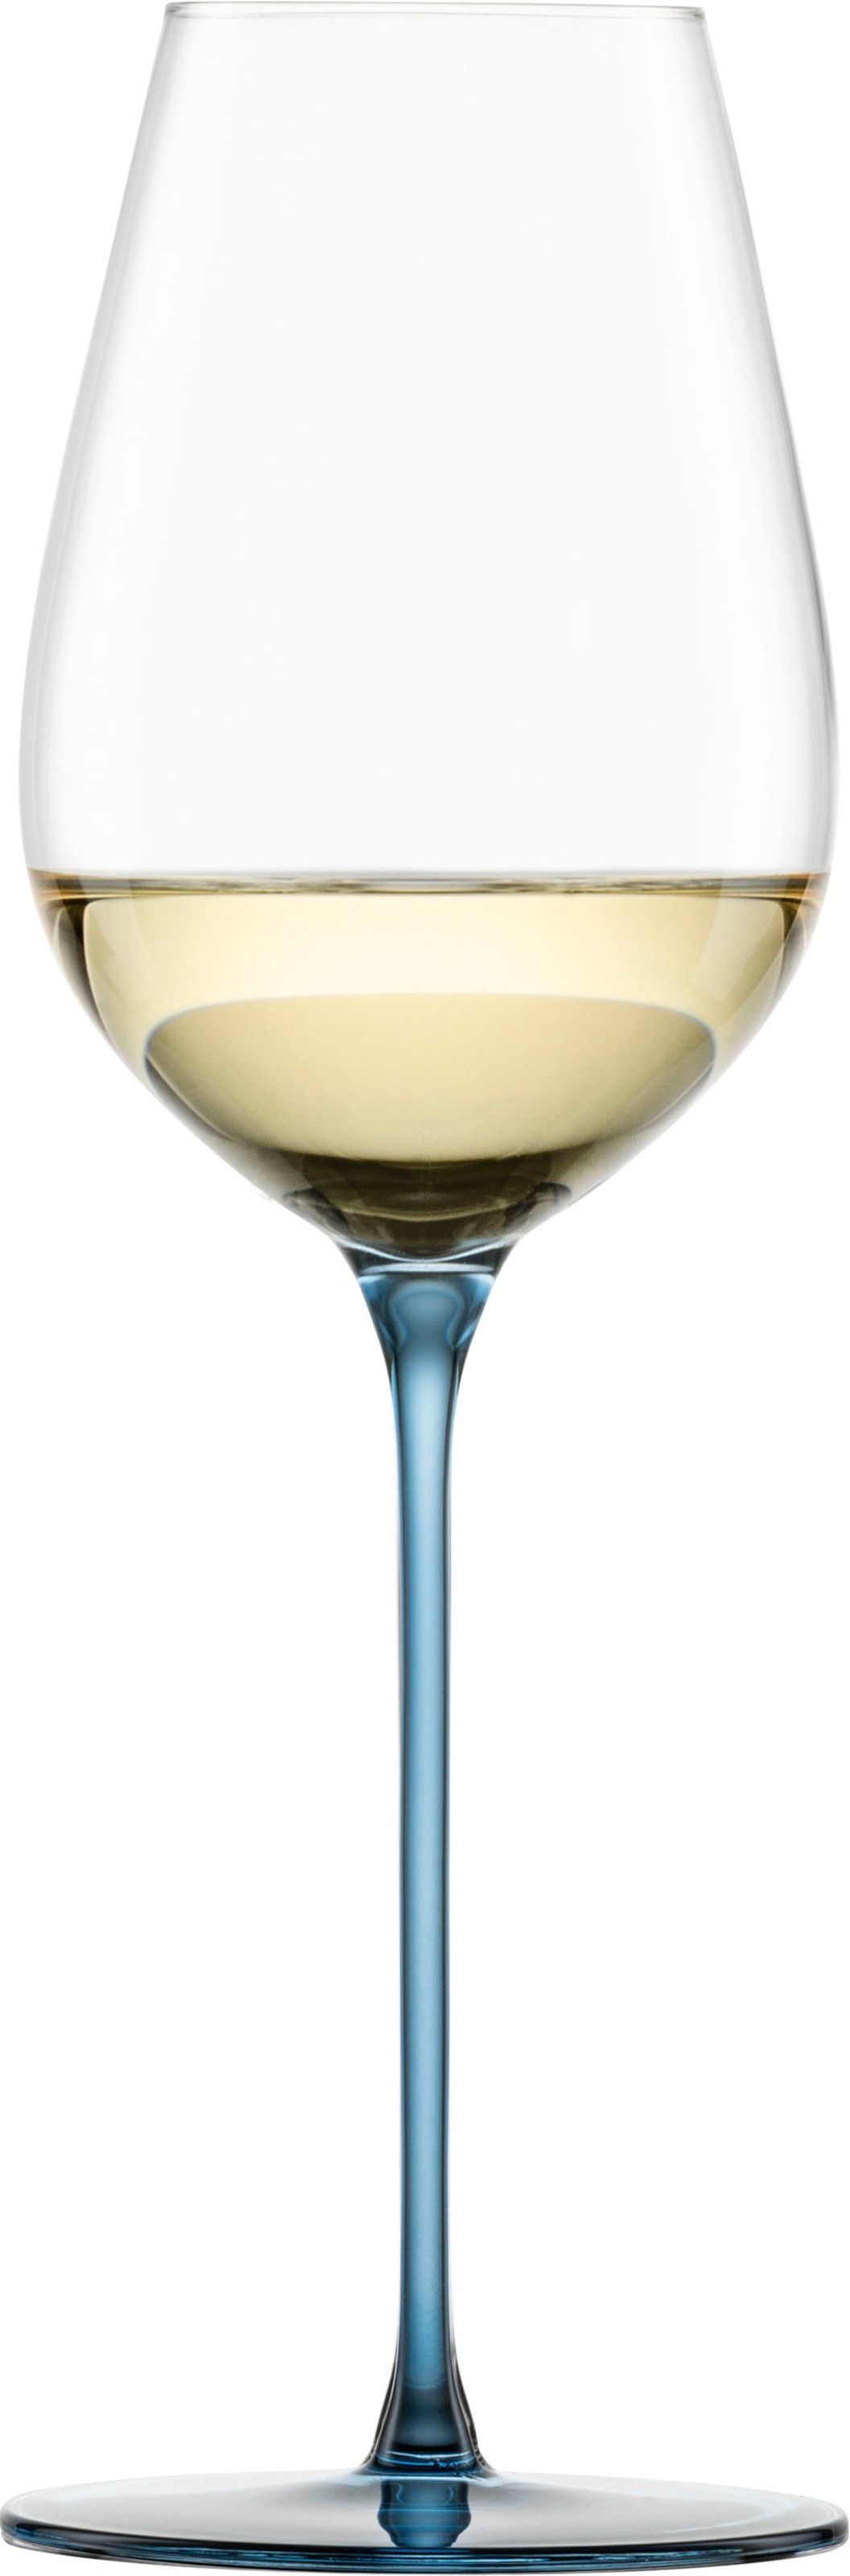 Eisch Champagnerglas "INSPIRE SENSISPLUS", (Set, 2 tlg., 2 Gläser im Geschenkkarton), die Veredelung der Stiele erfolgt 